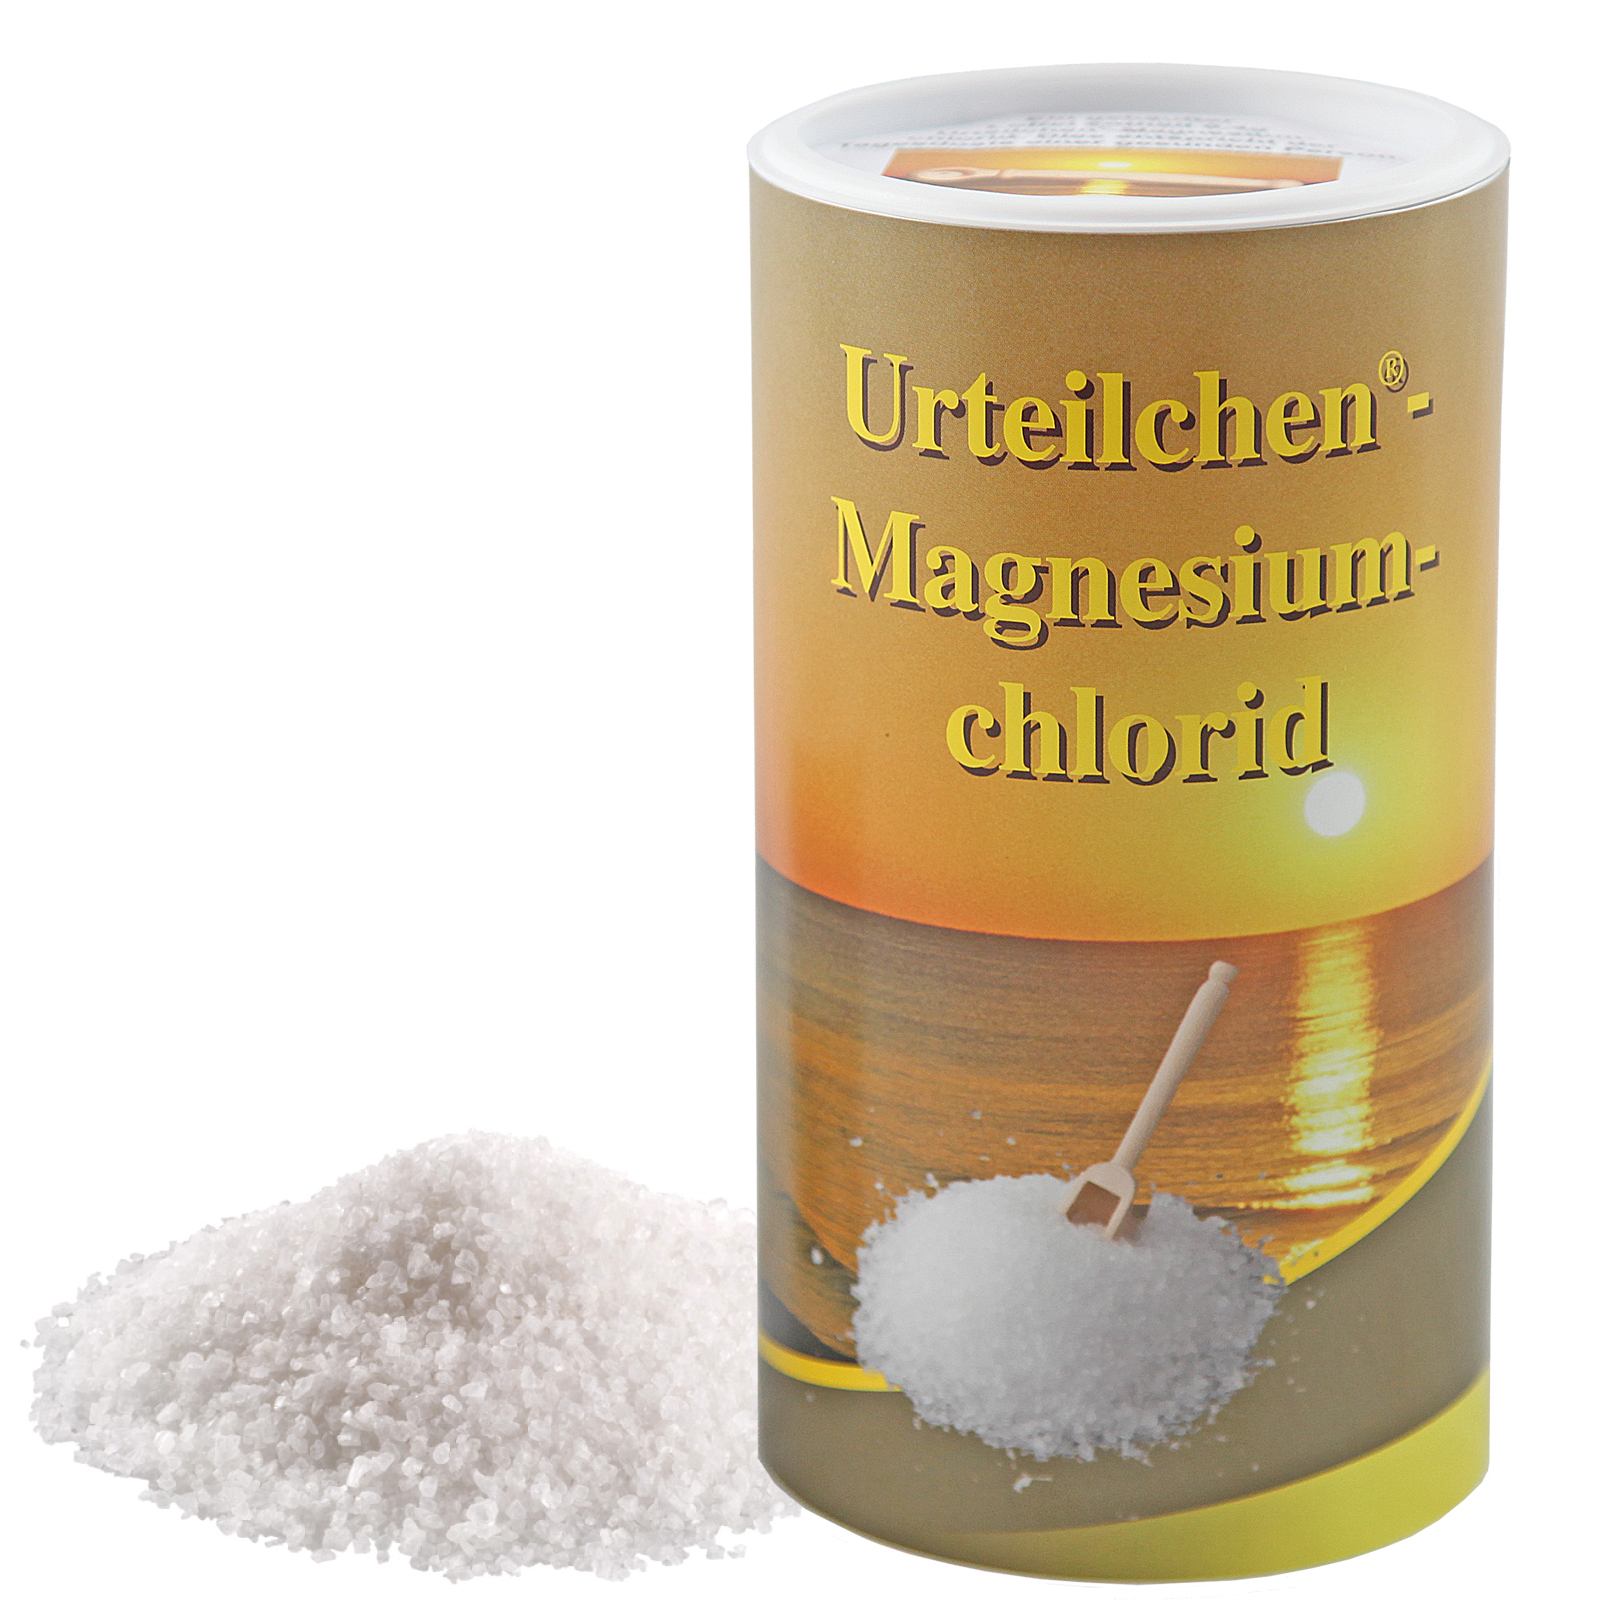 Urteilchen-Magnesiumchlorid 700 g